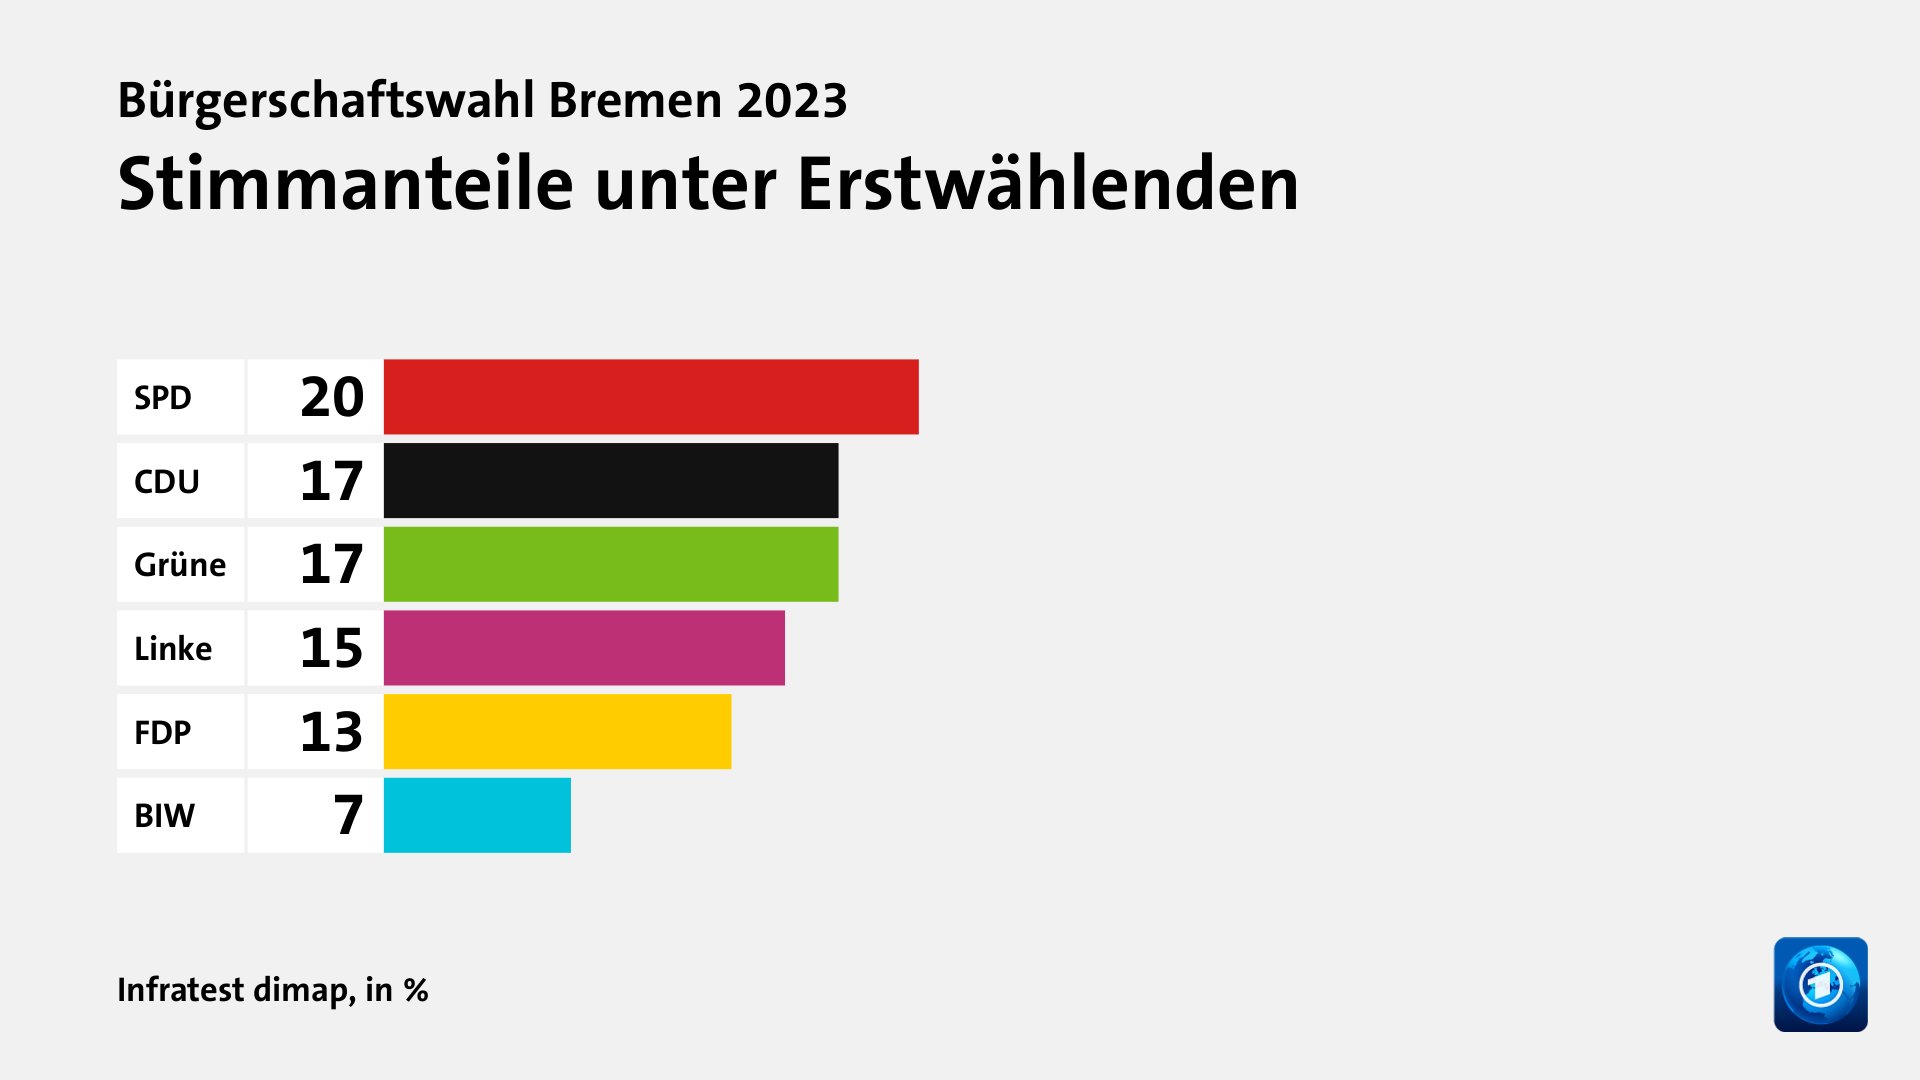 Stimmanteile unter Erstwählenden, in %: SPD 20, CDU 17, Grüne 17, Linke 15, FDP 13, BIW 7, Quelle: Infratest dimap